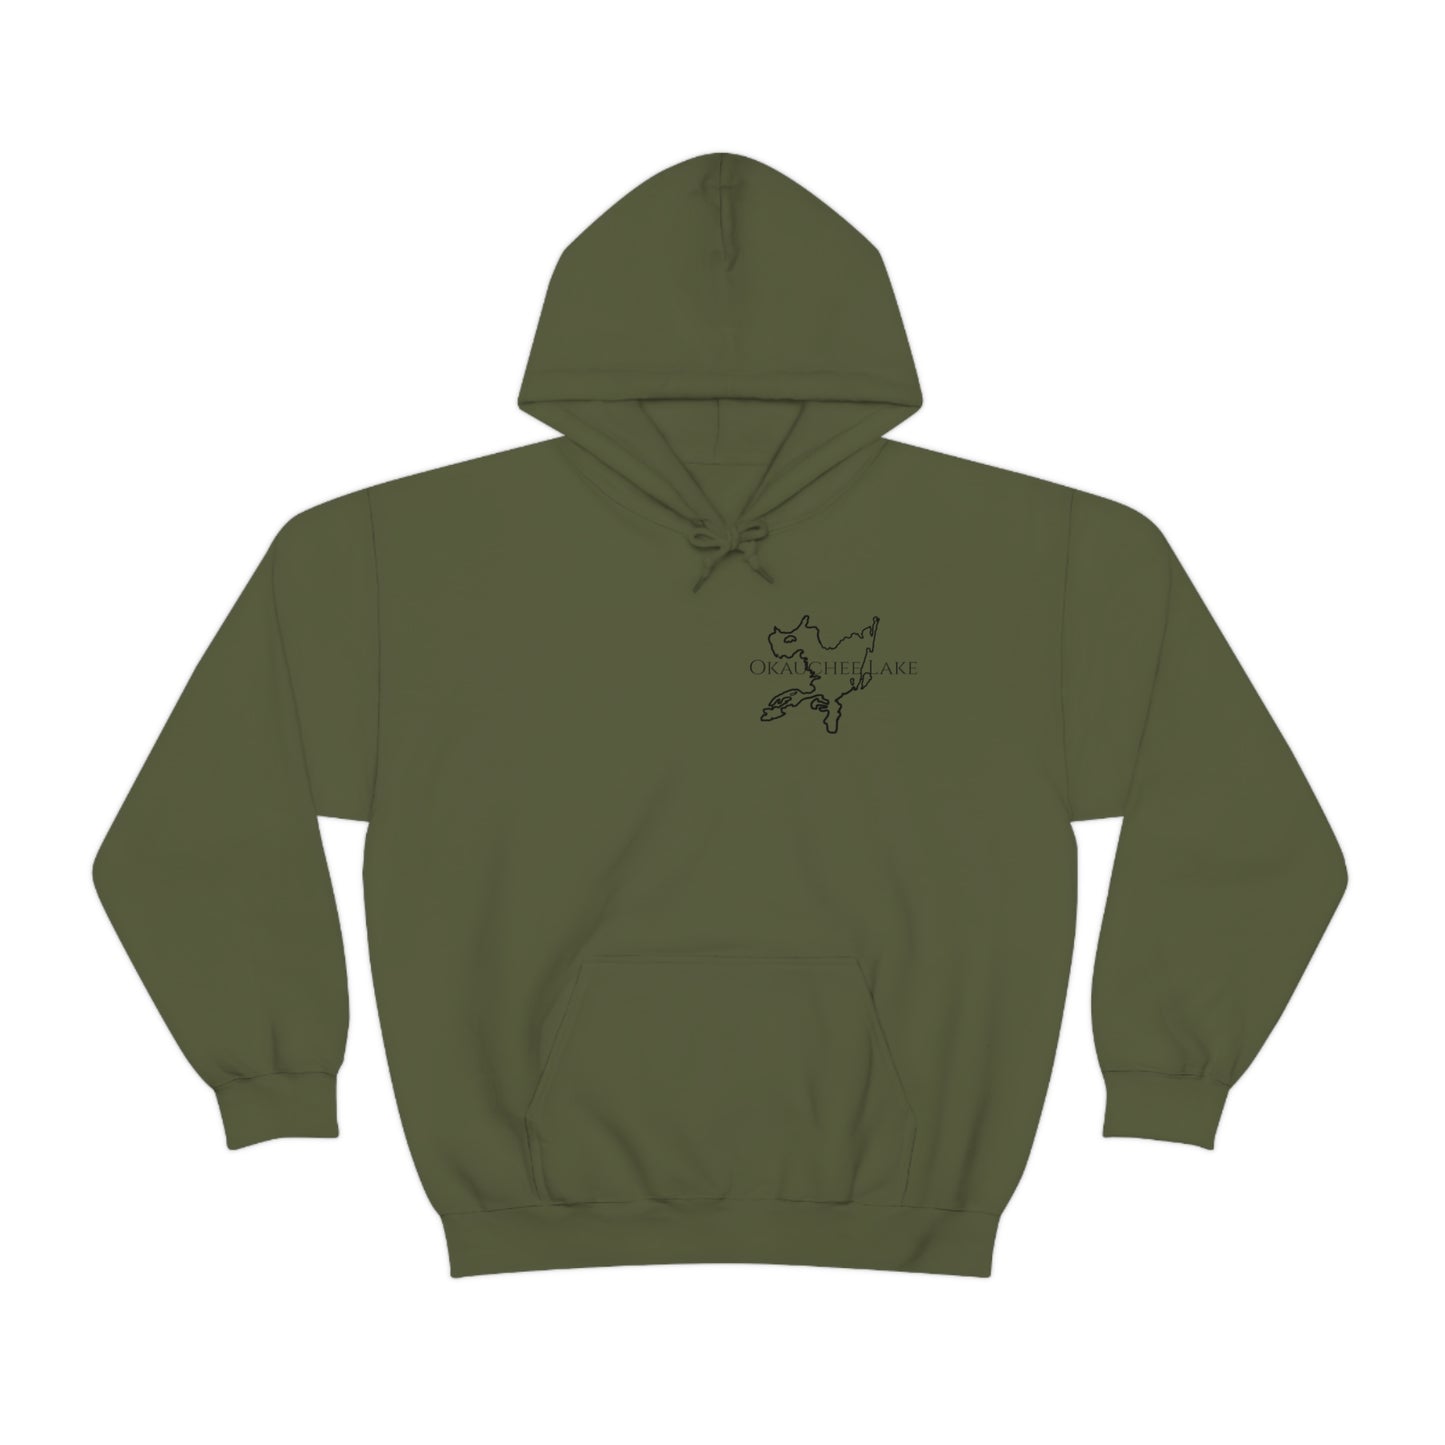 Trolling Motor Fishing, Bite or Beer - Okauchee Lake Unisex Heavy Blend Hooded Sweatshirt